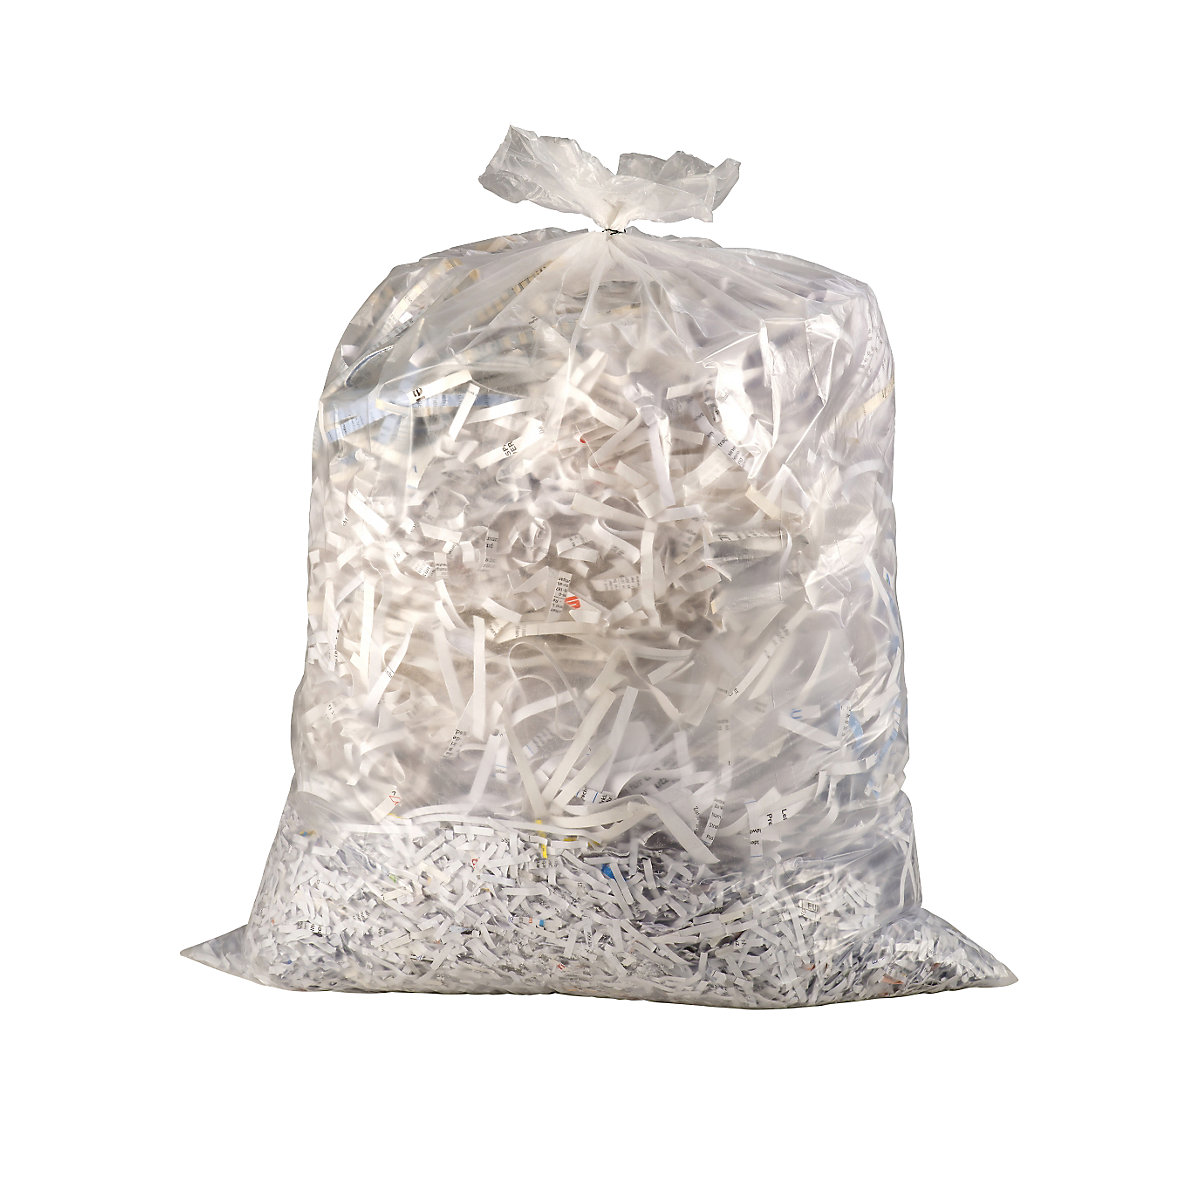 Rubbish bin bags, HDPE